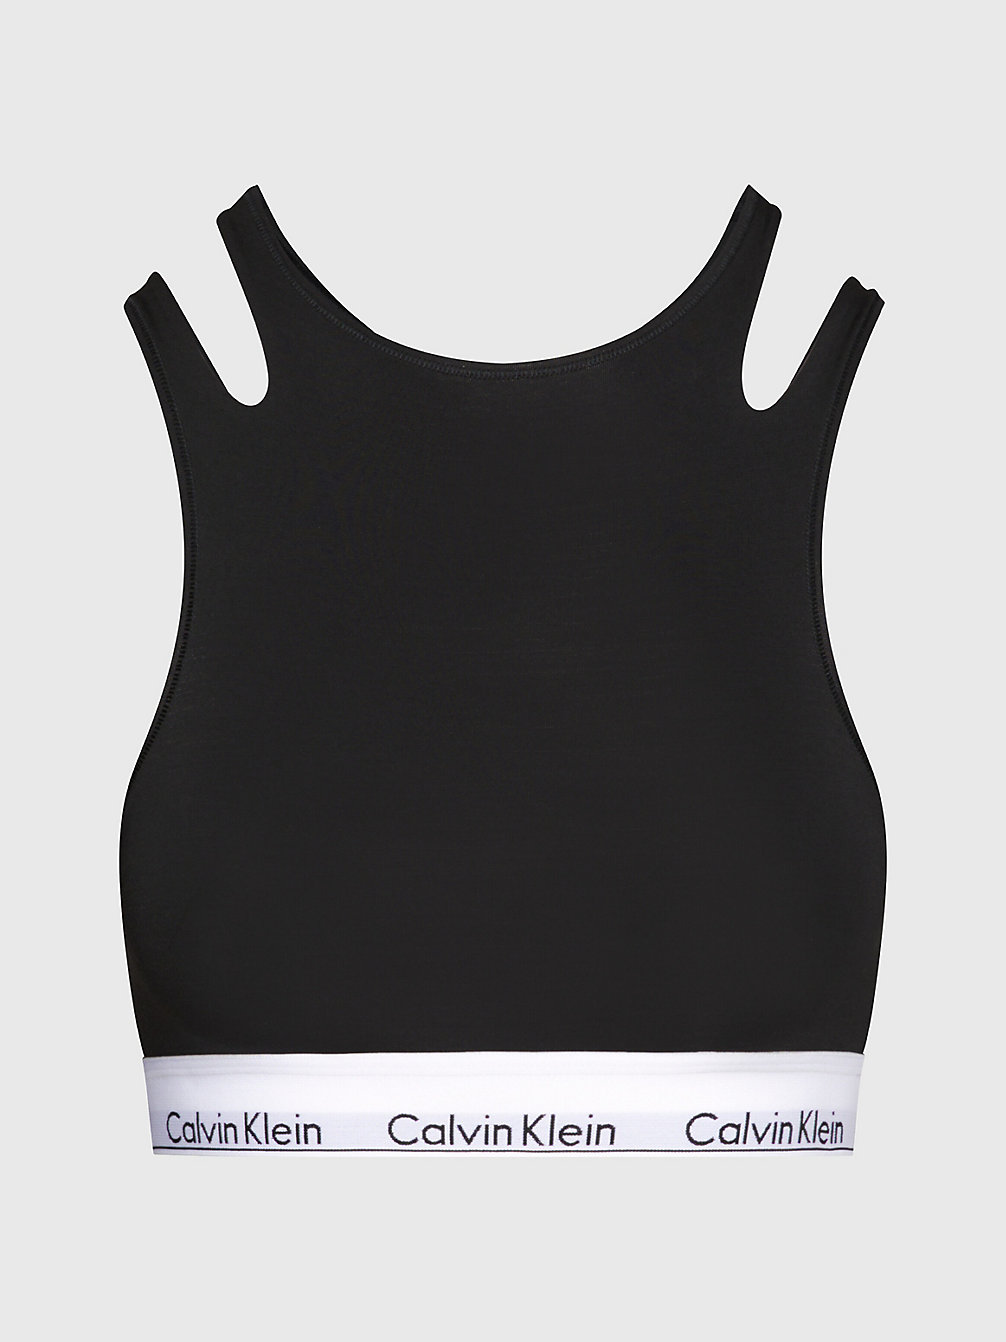 BLACK > Bustier - CK Deconstructed > undefined Damen - Calvin Klein